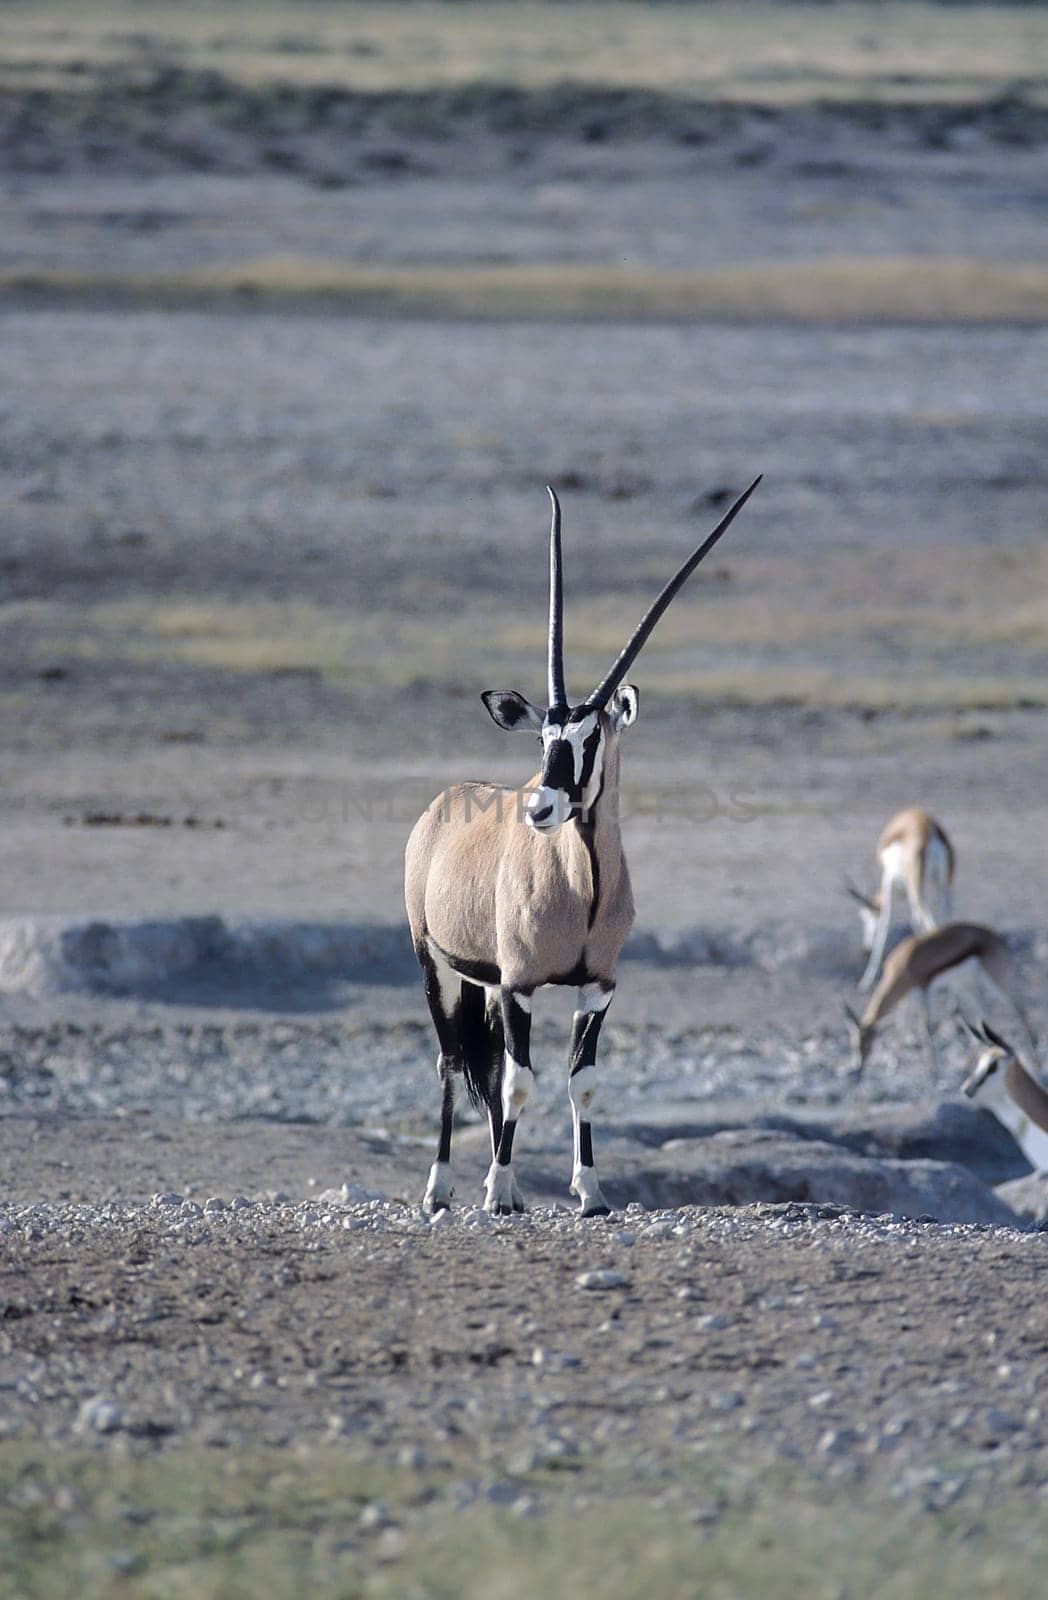 Gemsbok, (Oryx gazella), Africa, Namibia, Oshikoto, Etosha National Park